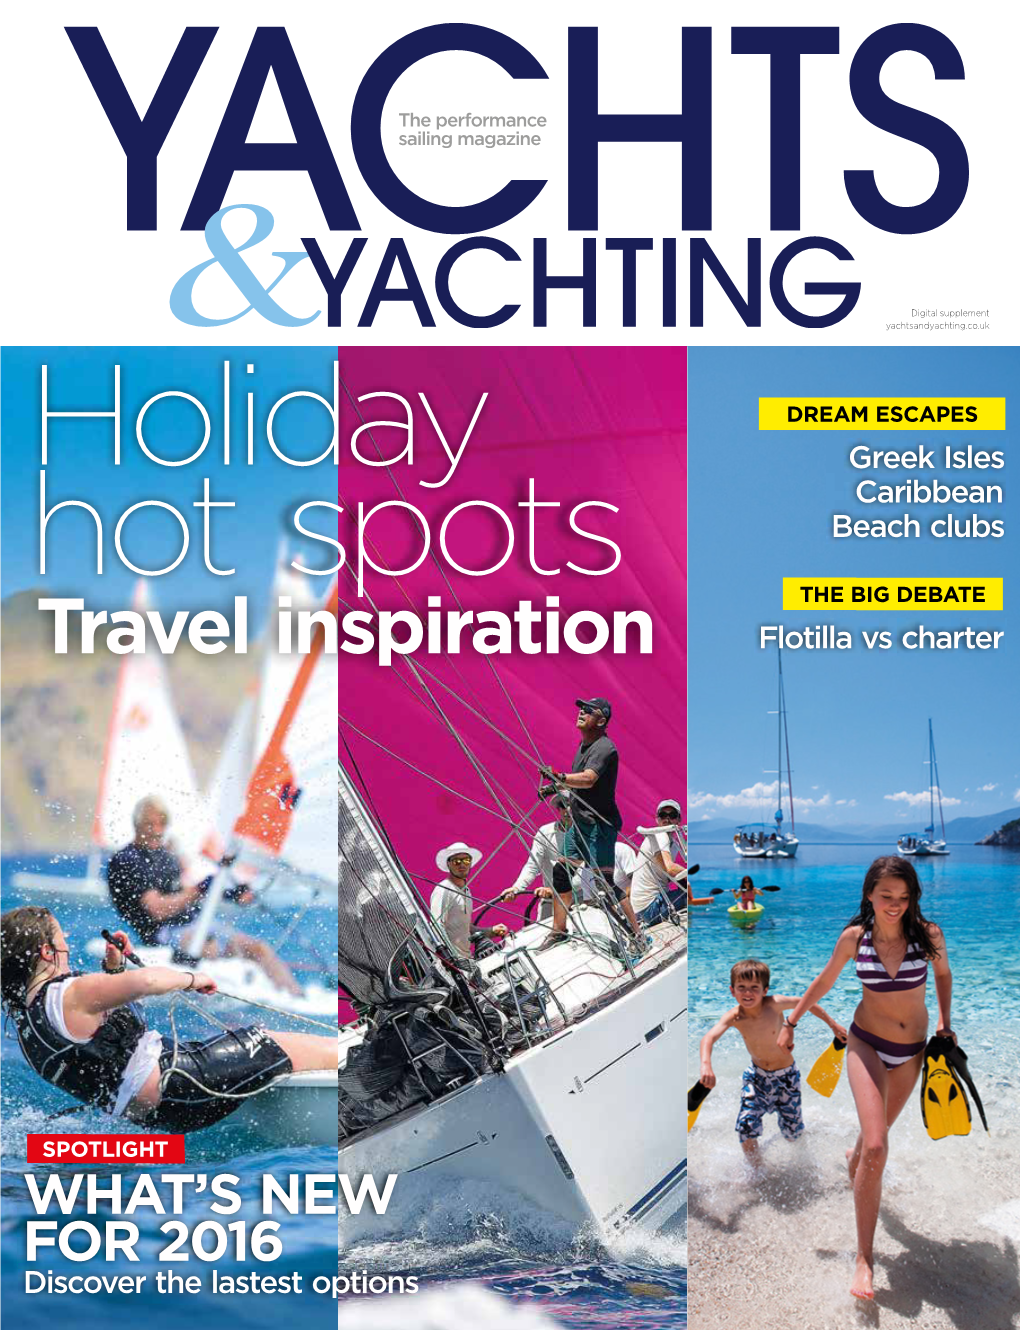 Travel Inspiration Flotilla Vs Charter